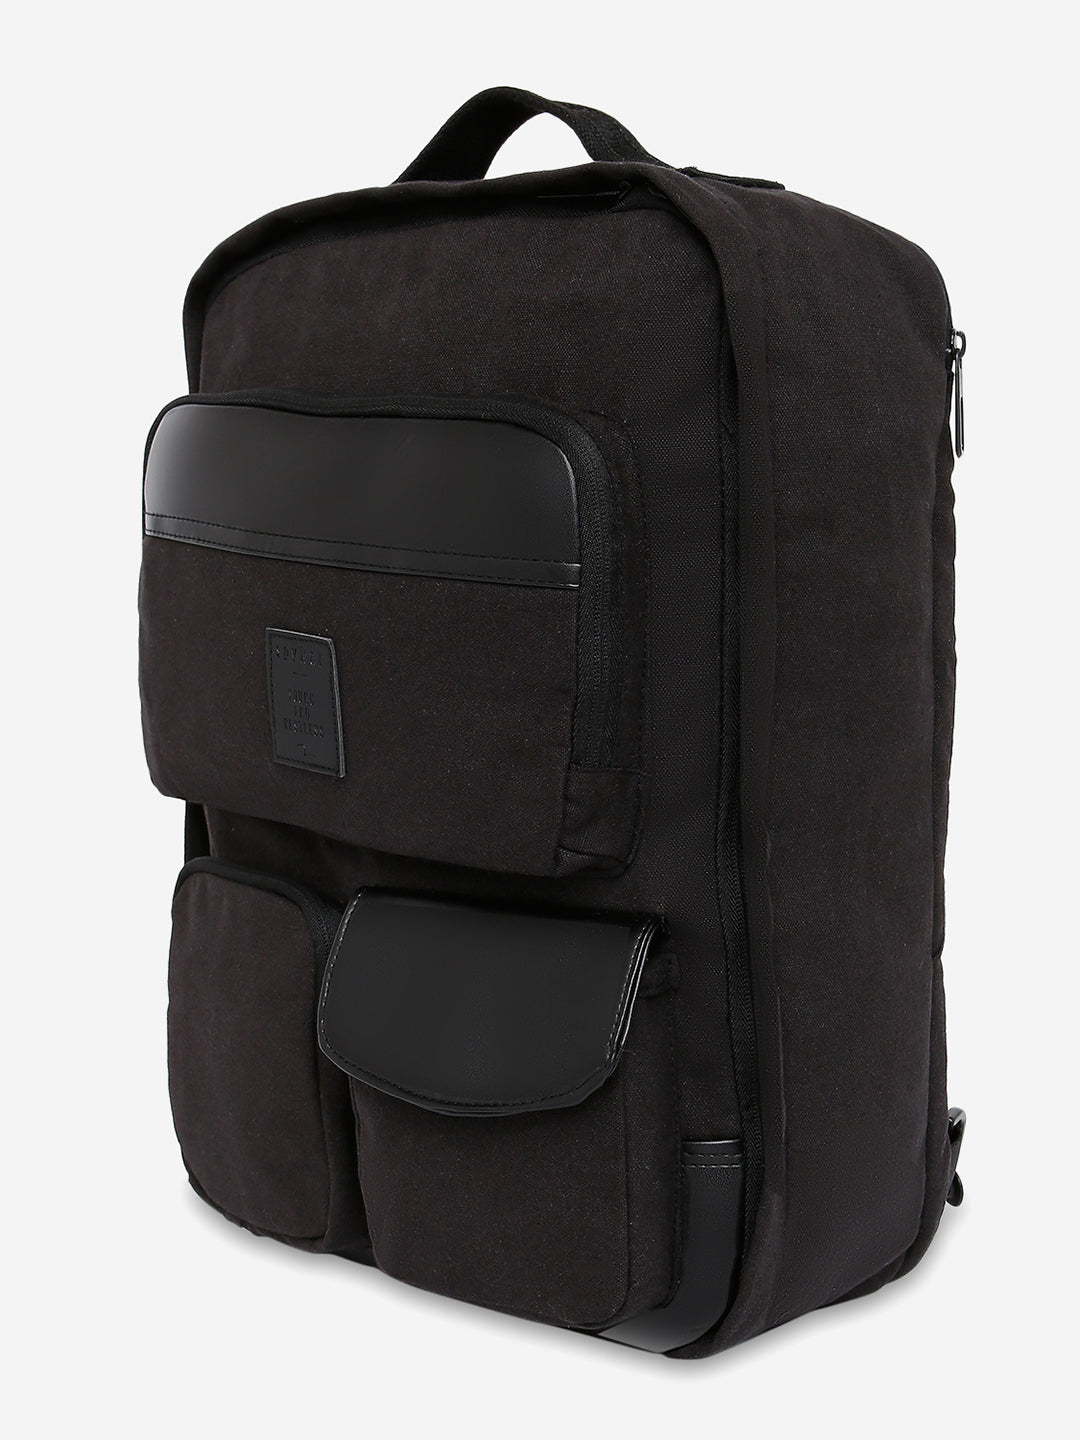 Nike small mini backpack Pink-Black 8” X 11” With Zipper | eBay